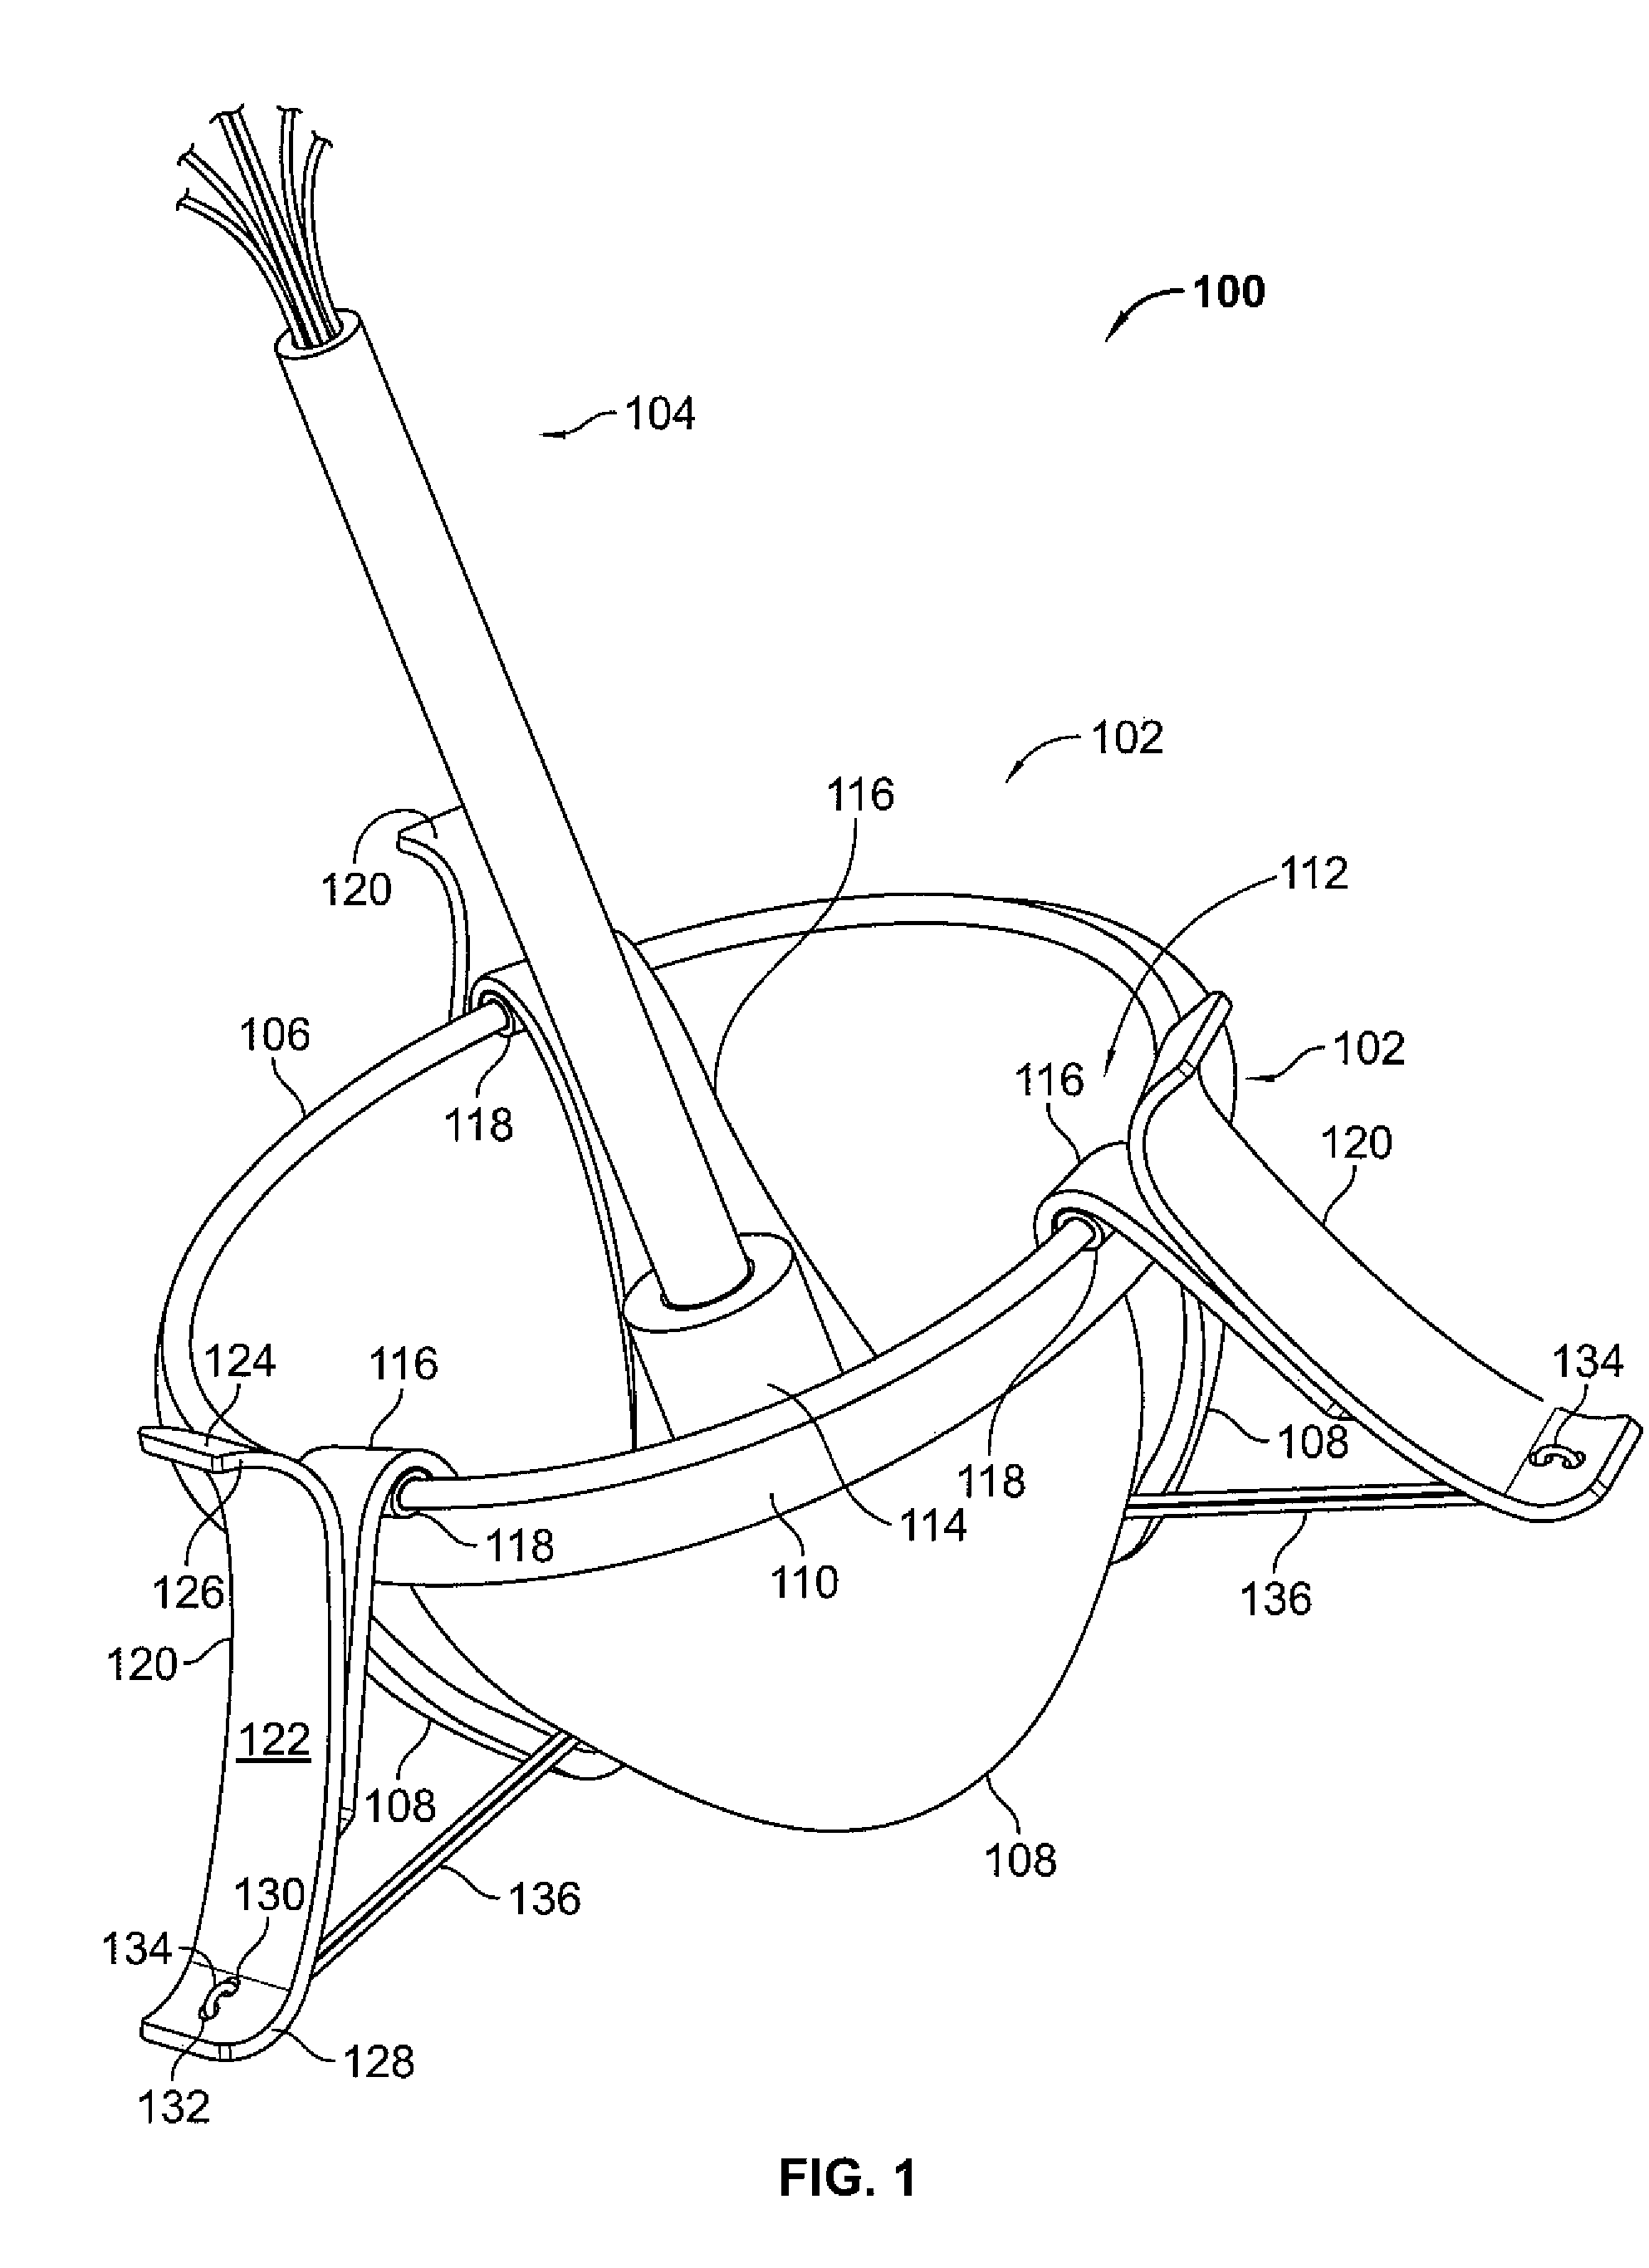 Mitral valve system